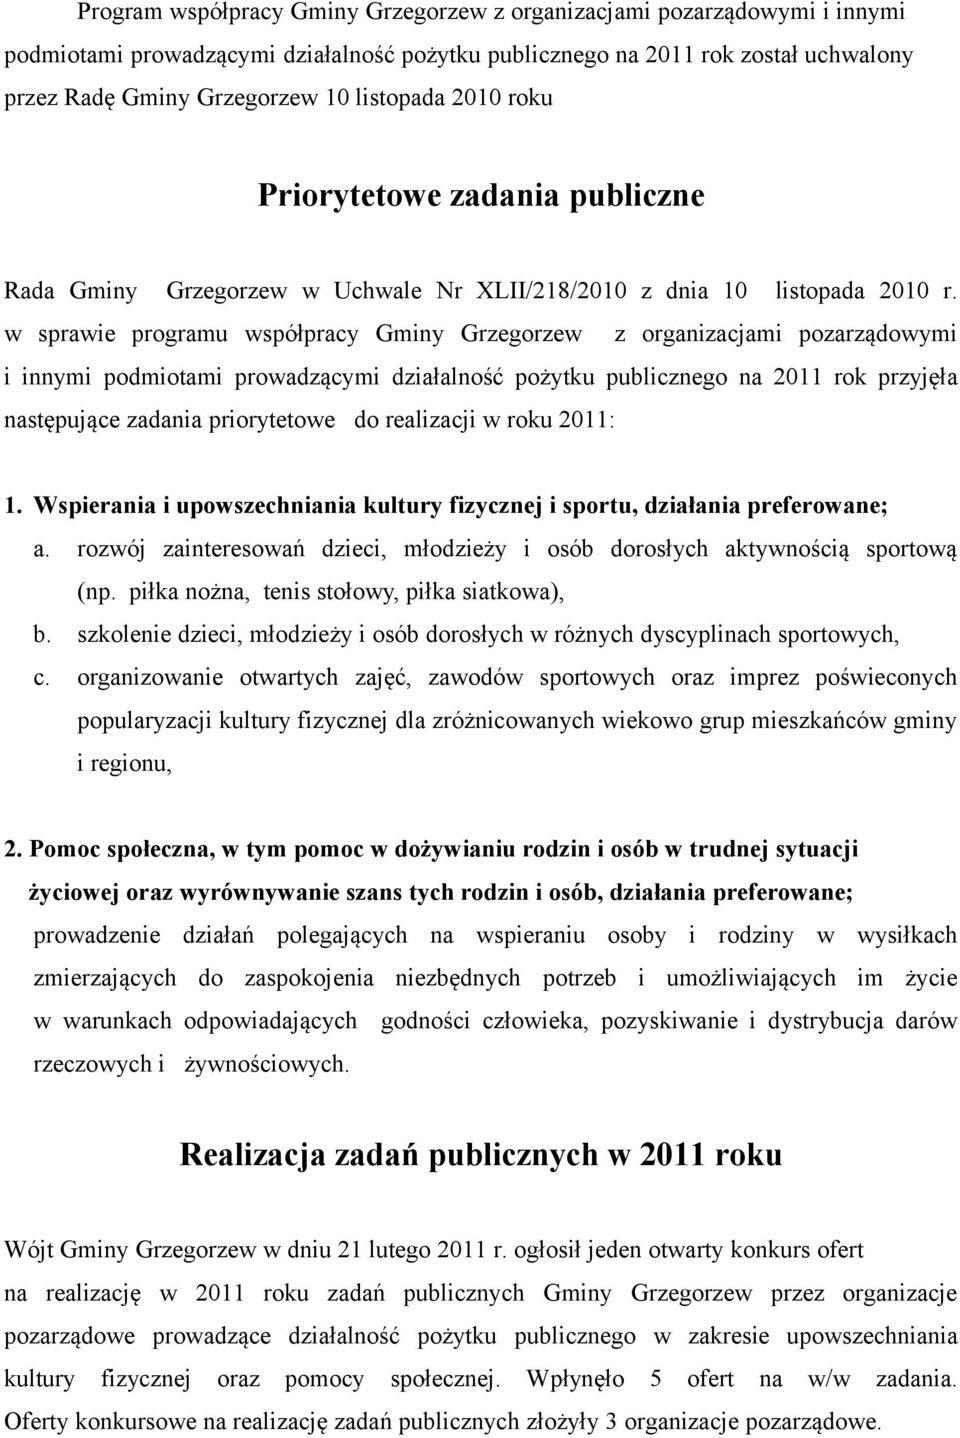 w sprawie programu współpracy Gminy Grzegorzew z organizacjami pozarządowymi i innymi podmiotami prowadzącymi działalność pożytku publicznego na 2011 rok przyjęła następujące zadania priorytetowe do